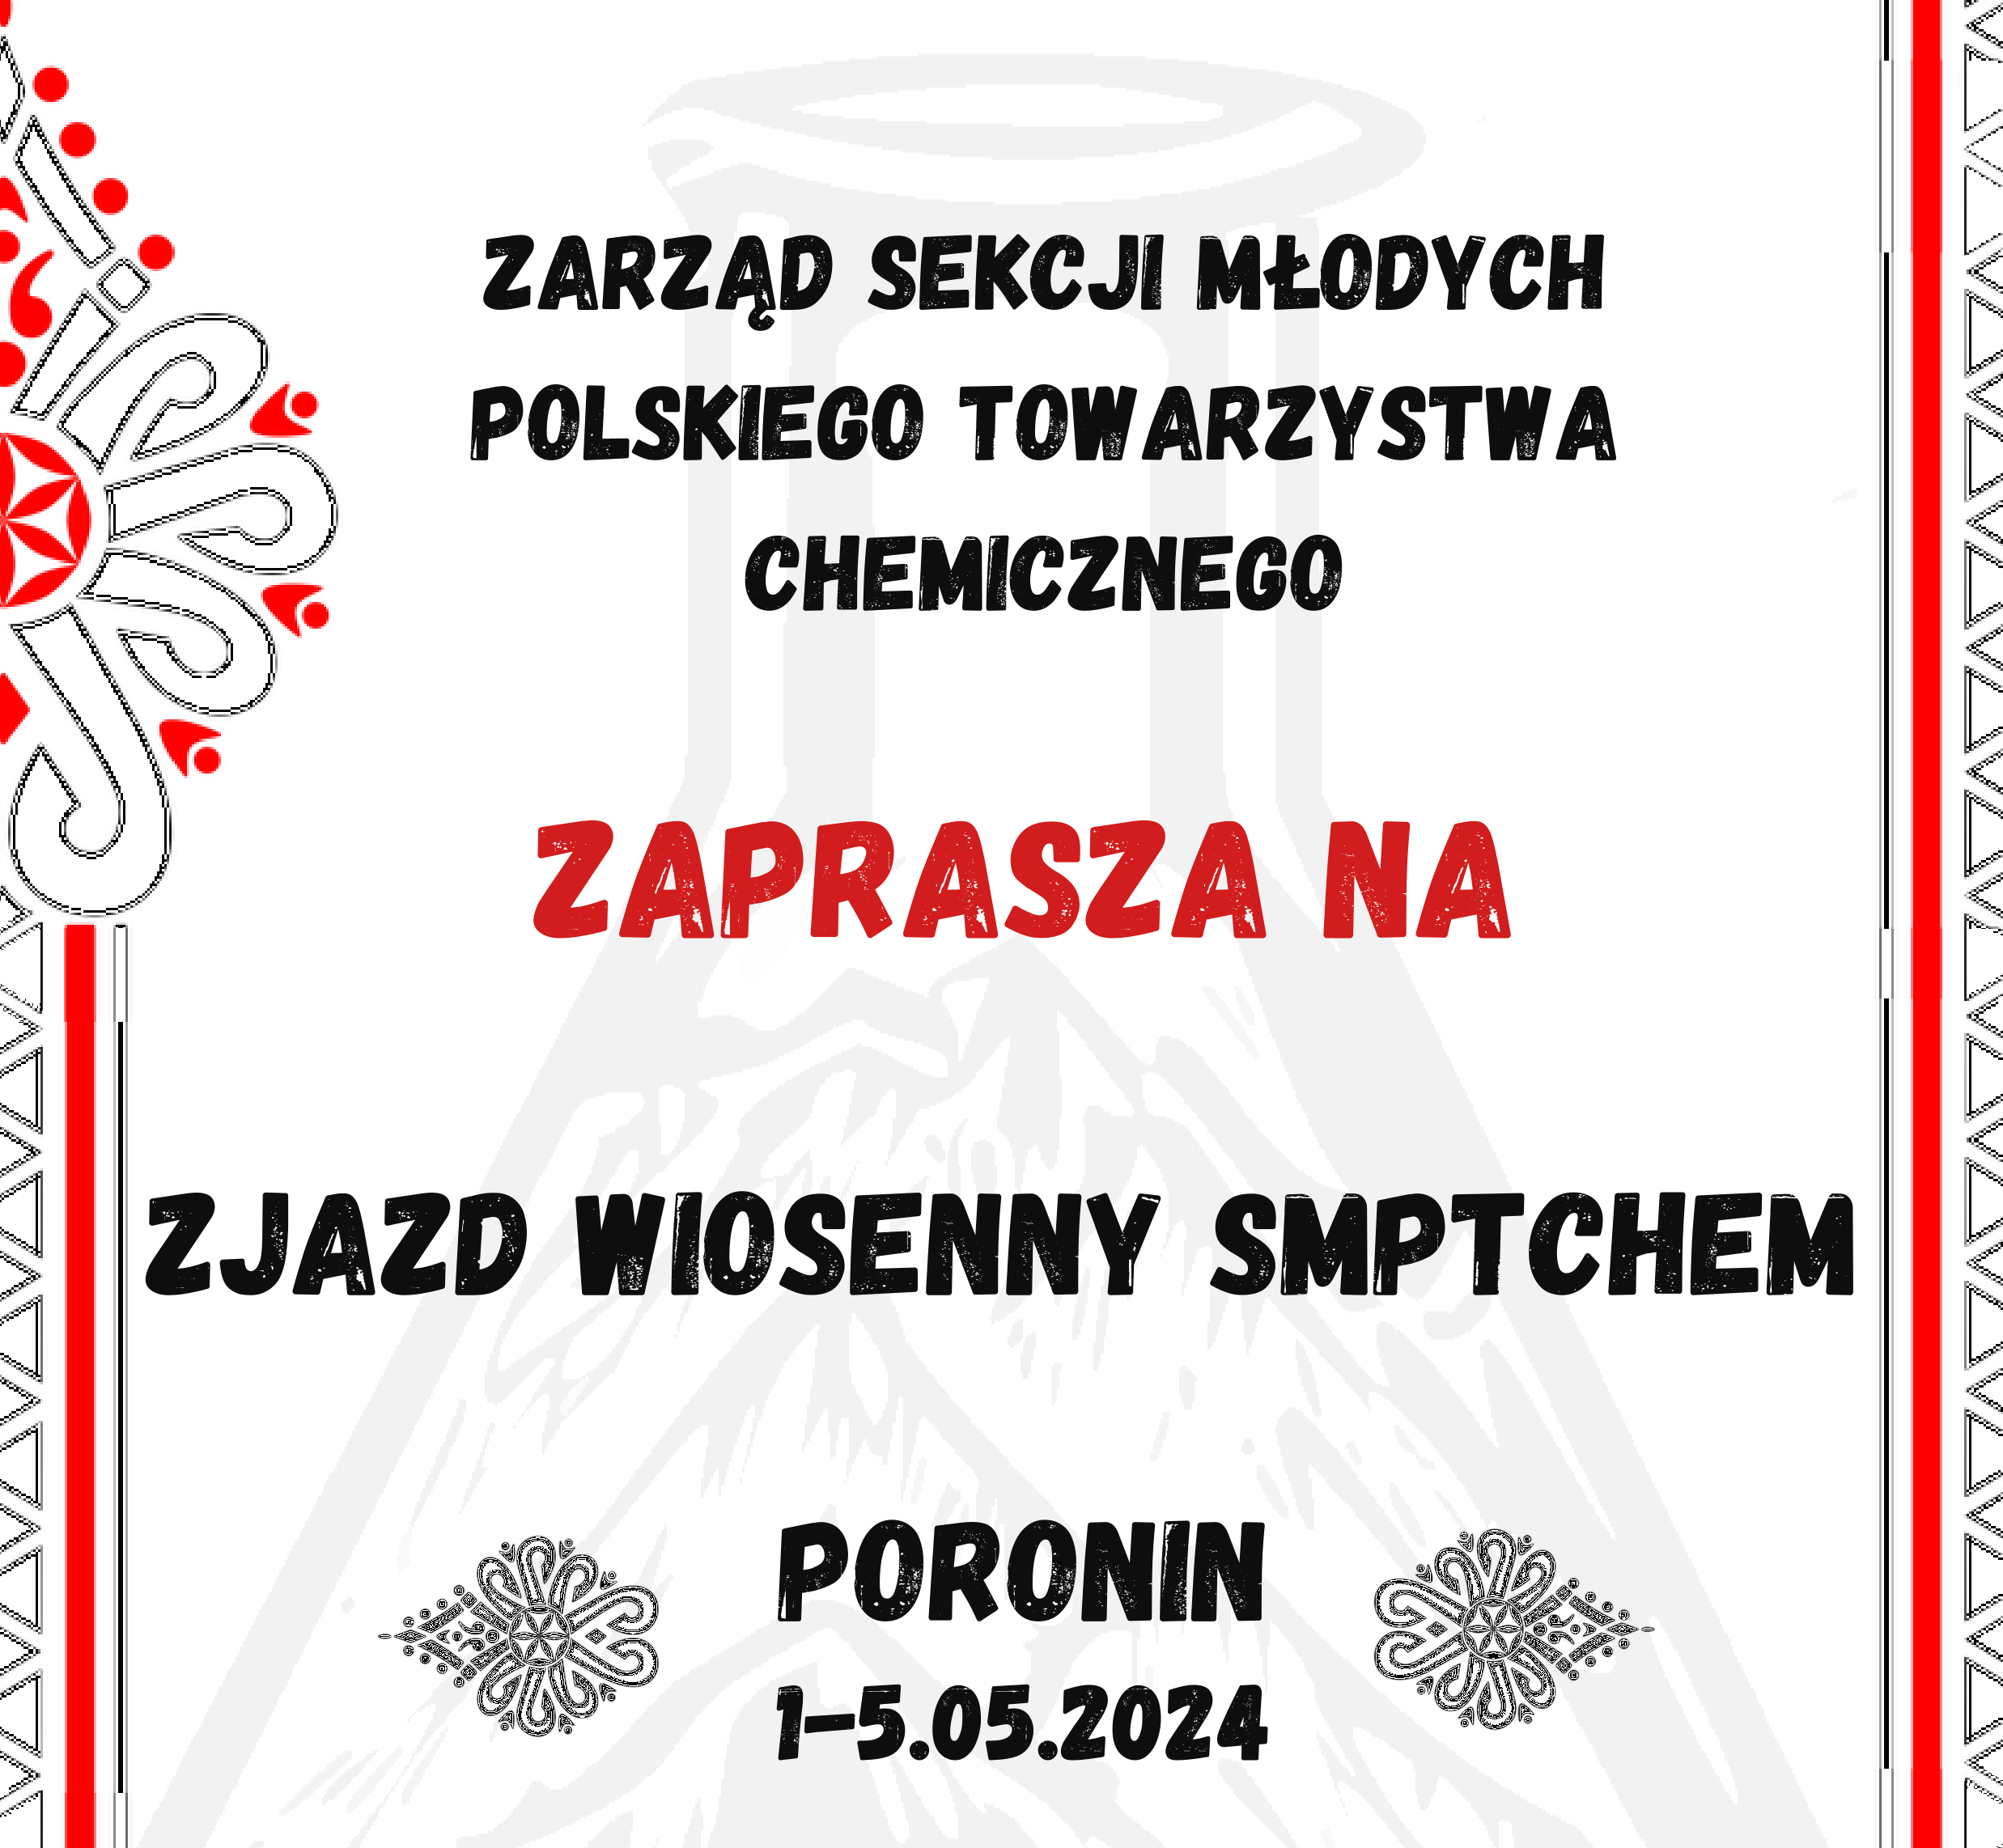 Wiosenny Zjazd Sekcji Młodych Polskiego Towarzystwa Chemicznego